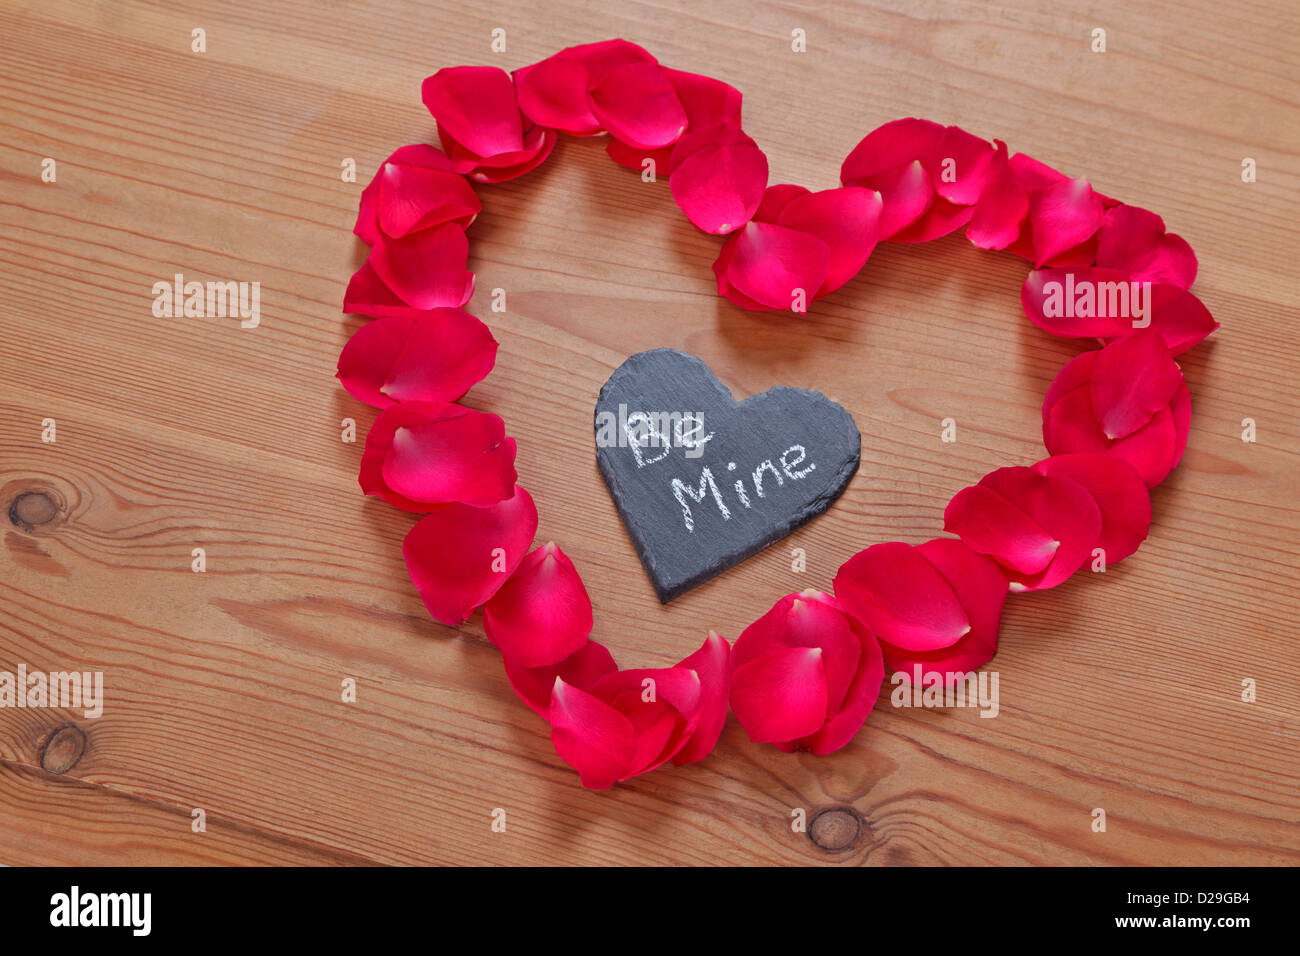 Forma de corazón hecha con pétalos de rosas rojas naturales concepto mínimo  de amor o día de la madre idea romántica